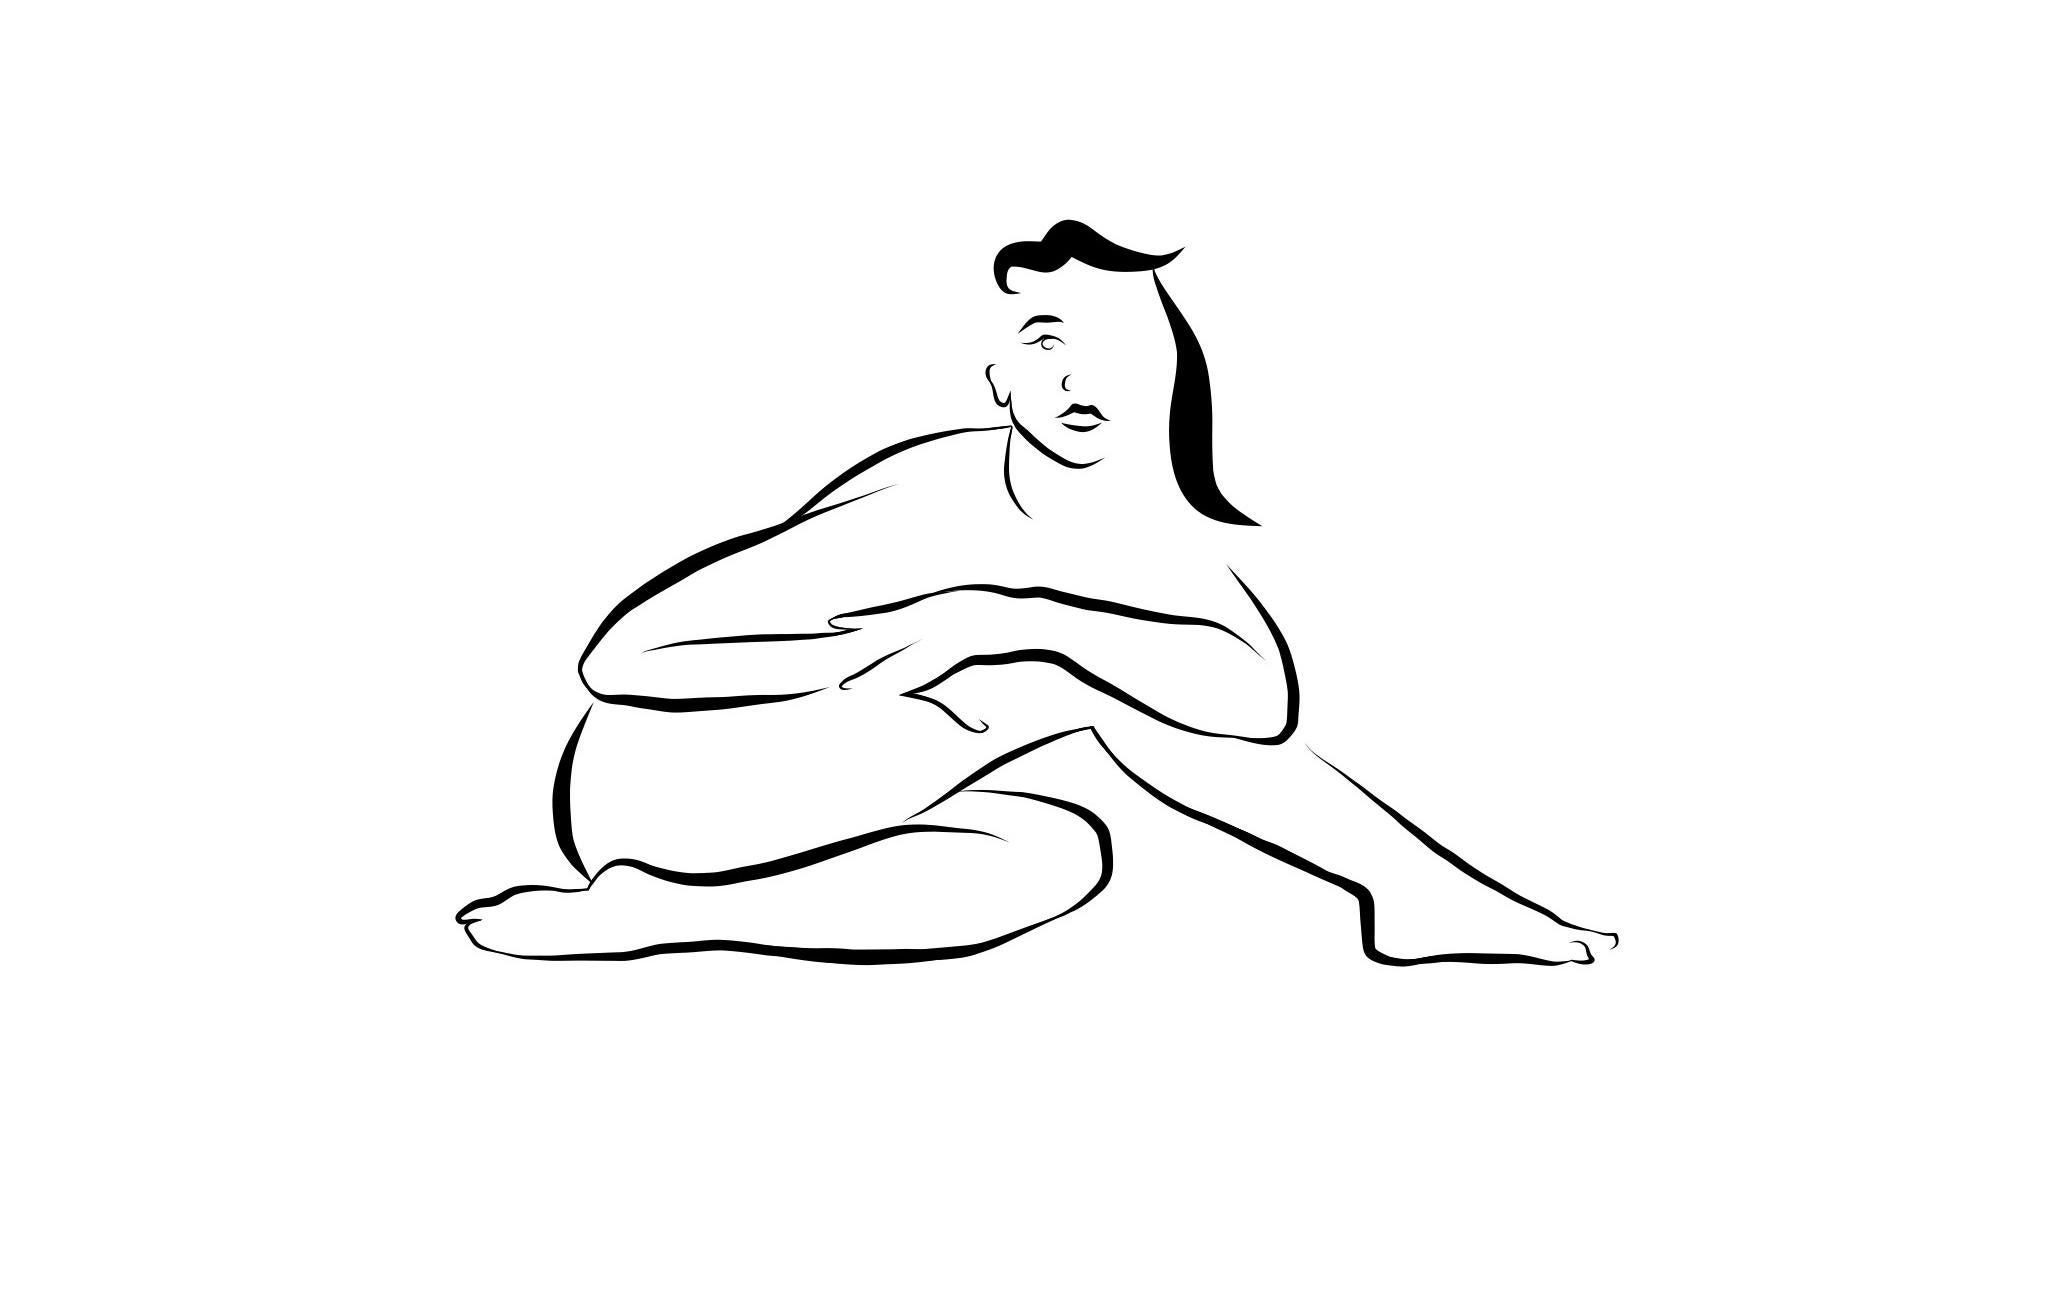 Michael Binkley Nude Print - Haiku #14  - Digital Vector Drawing B&W Sitting Female Nude Woman Figure